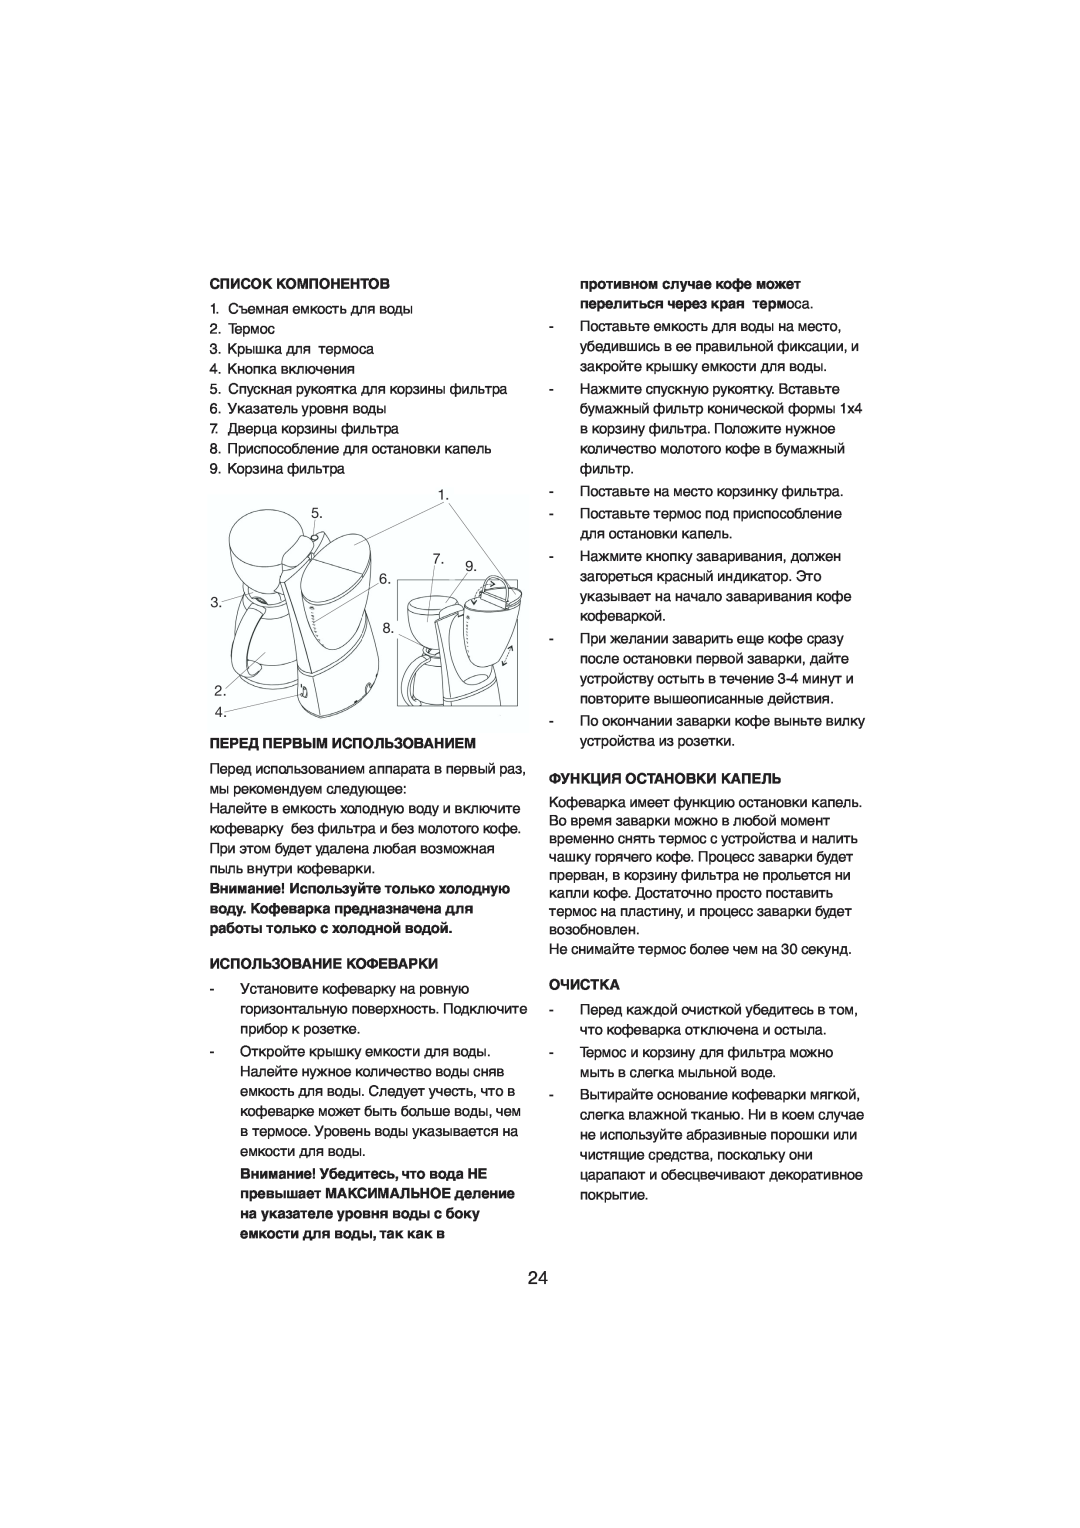 Melissa 245-021 manual Список Компонентов, Перед Первым Использованием, Использование Кофеварки, Функция Остановки Капель 